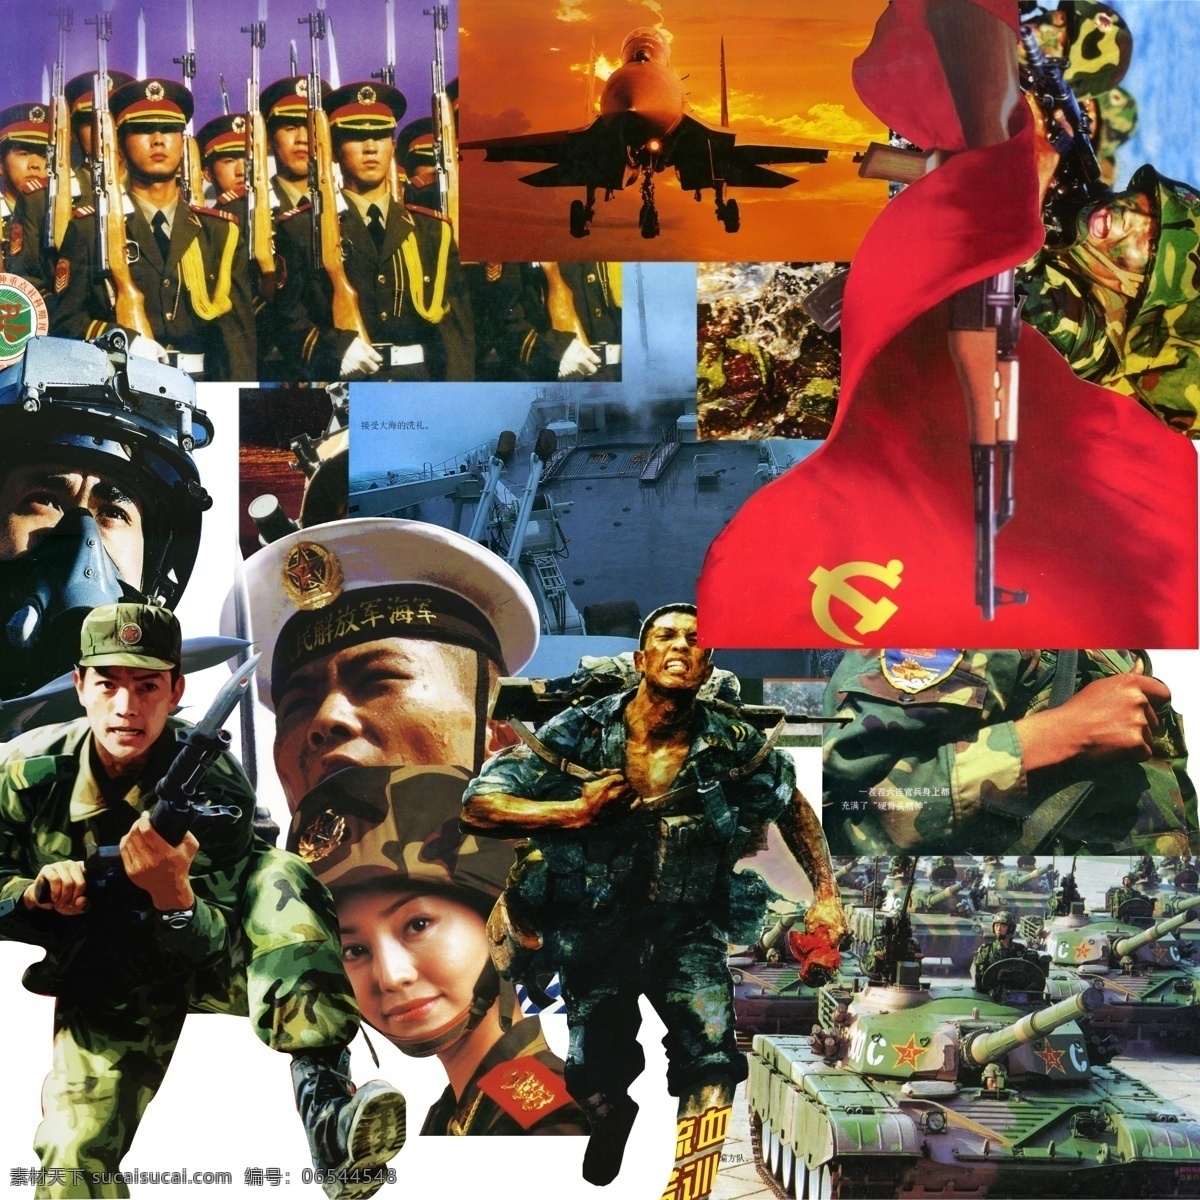 部队资料 部队 军人 解放军 武警 炮团 女兵 气势 豪迈 保护神 坦克 国内广告设计 广告设计模板 源文件